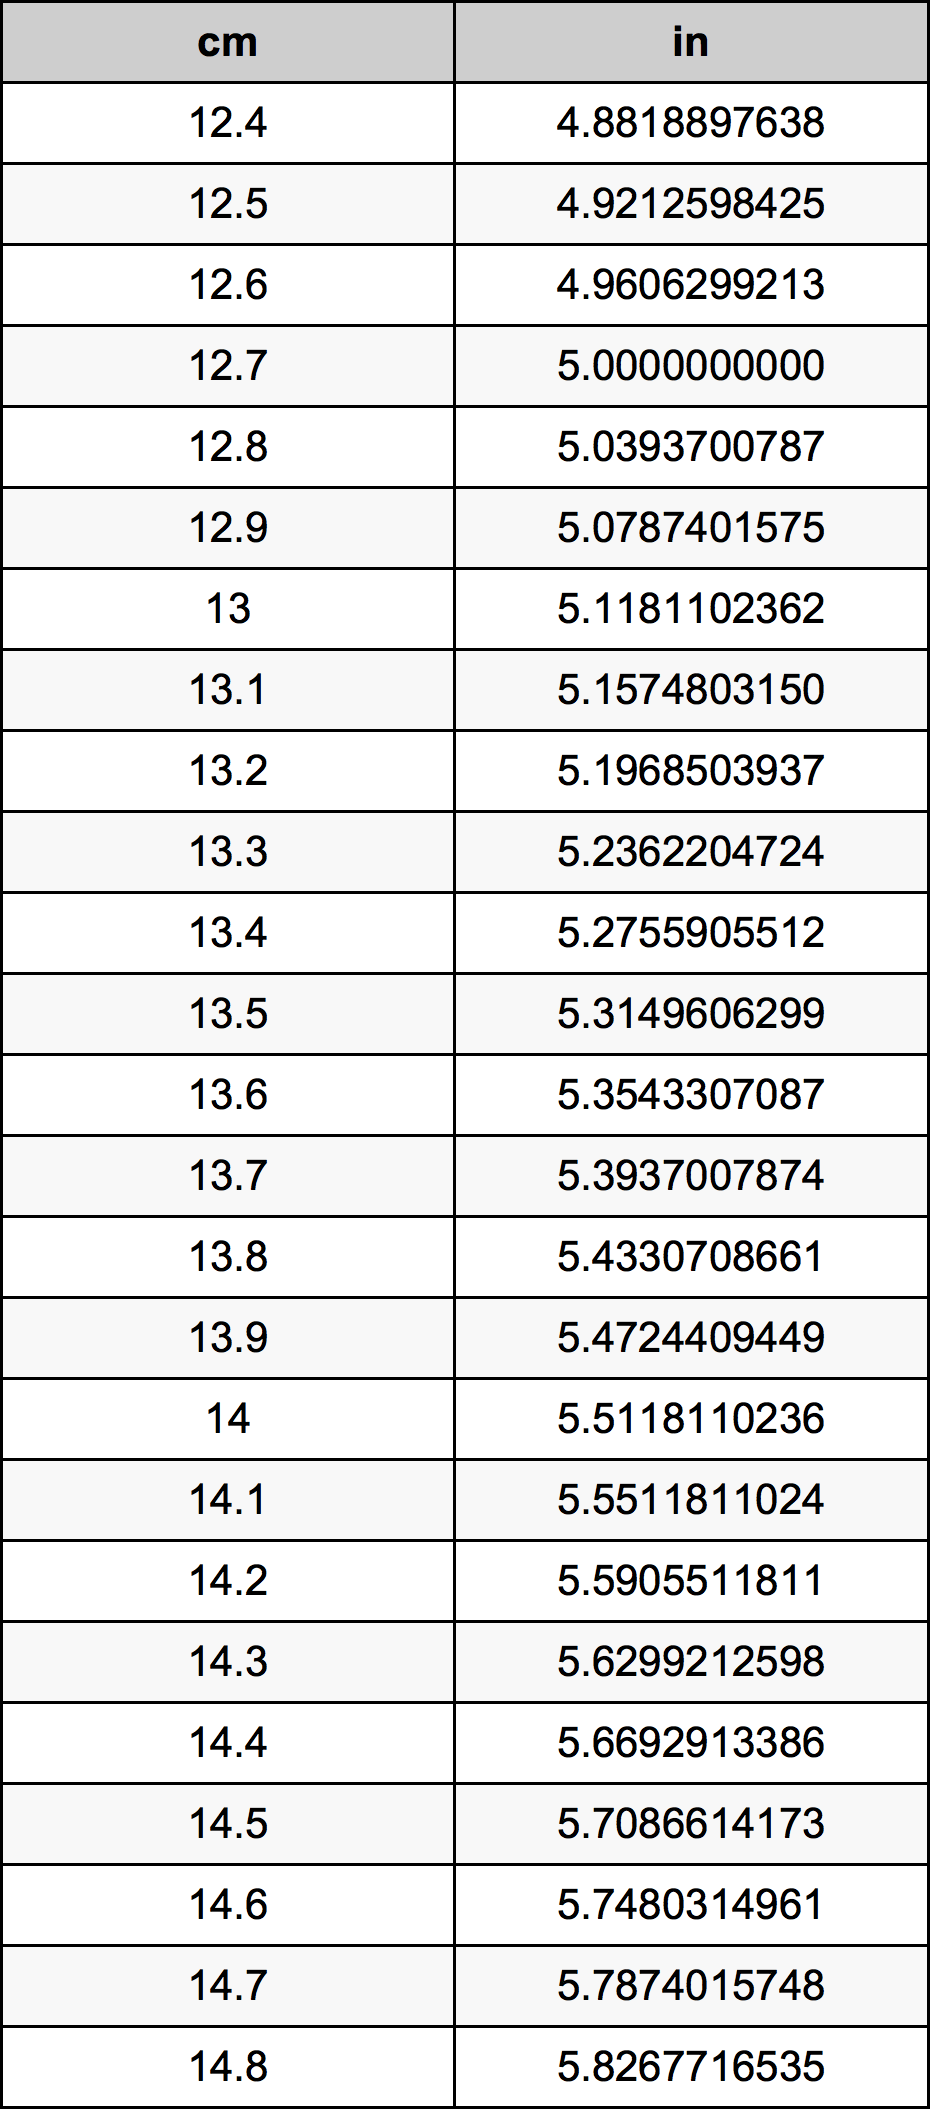 13.6 Centiméter átszámítási táblázat